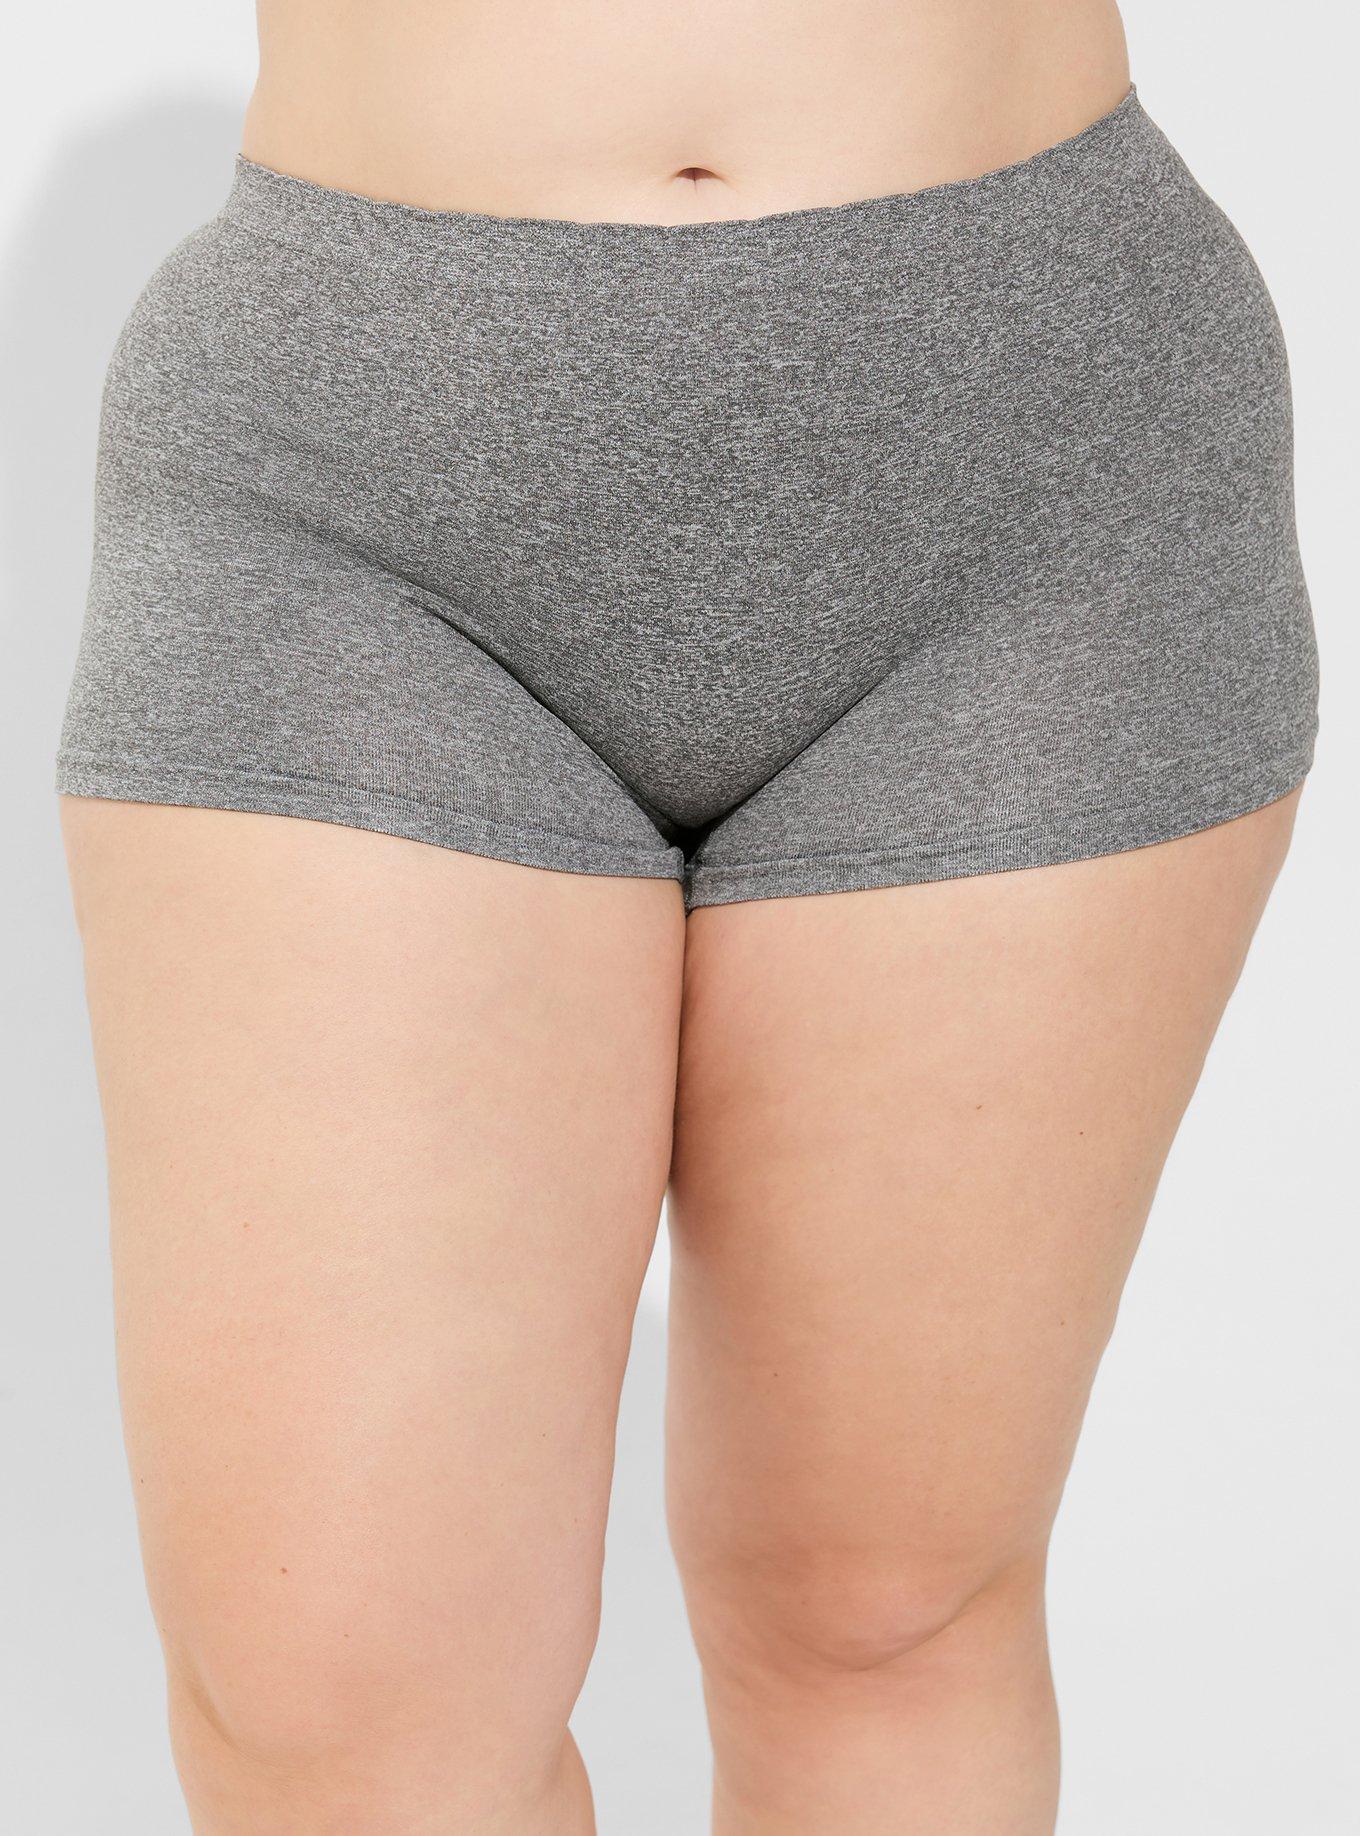 High Waist Briefs For Women Boy Shorts Panties For Women Mid Rise